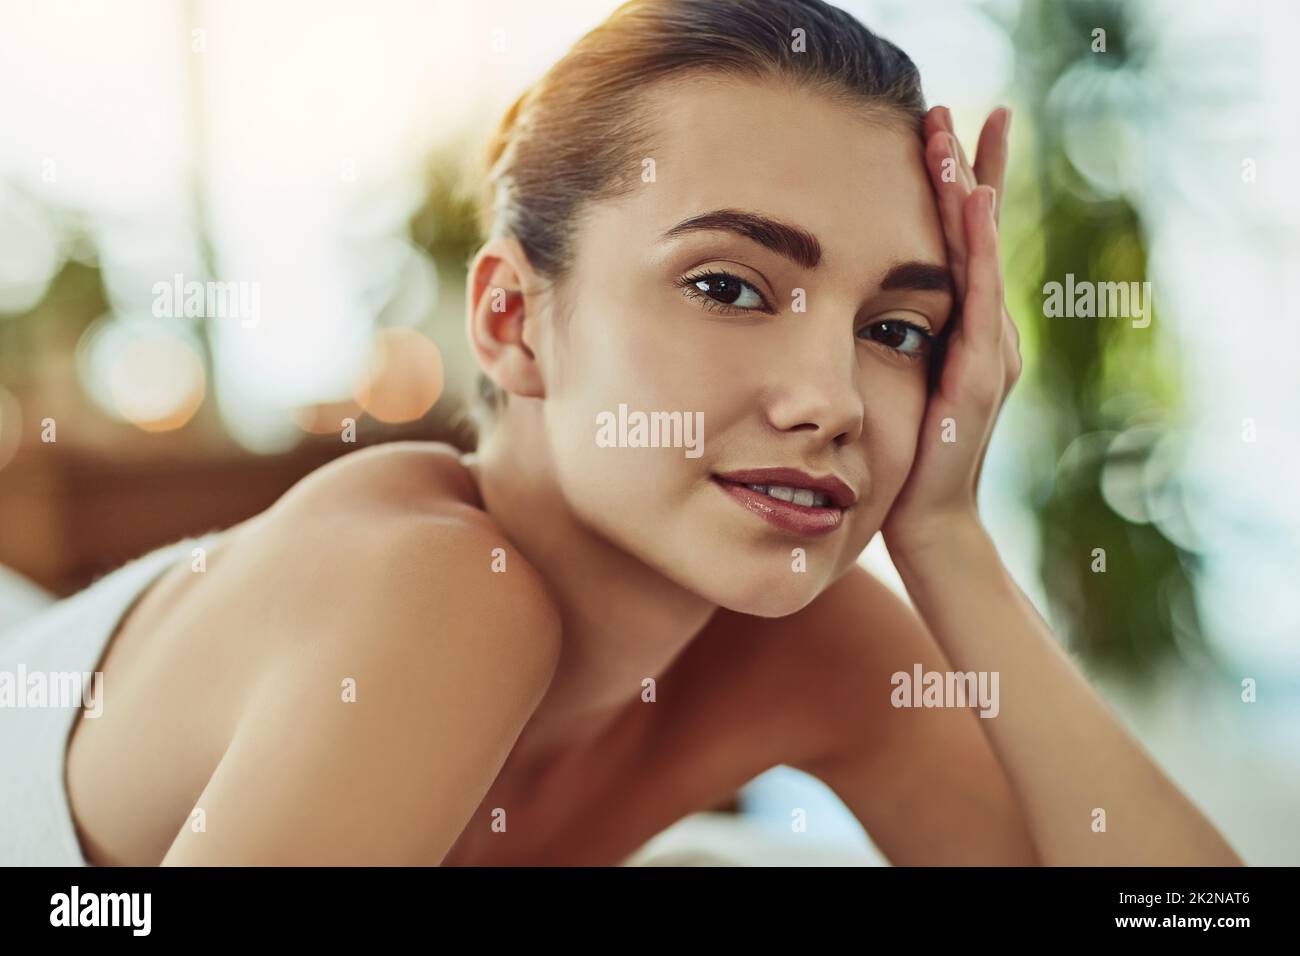 C'est ce à quoi se sent la relaxation totale. Portrait d'une jeune femme attirante se faisant dorloter dans un spa de beauté. Banque D'Images